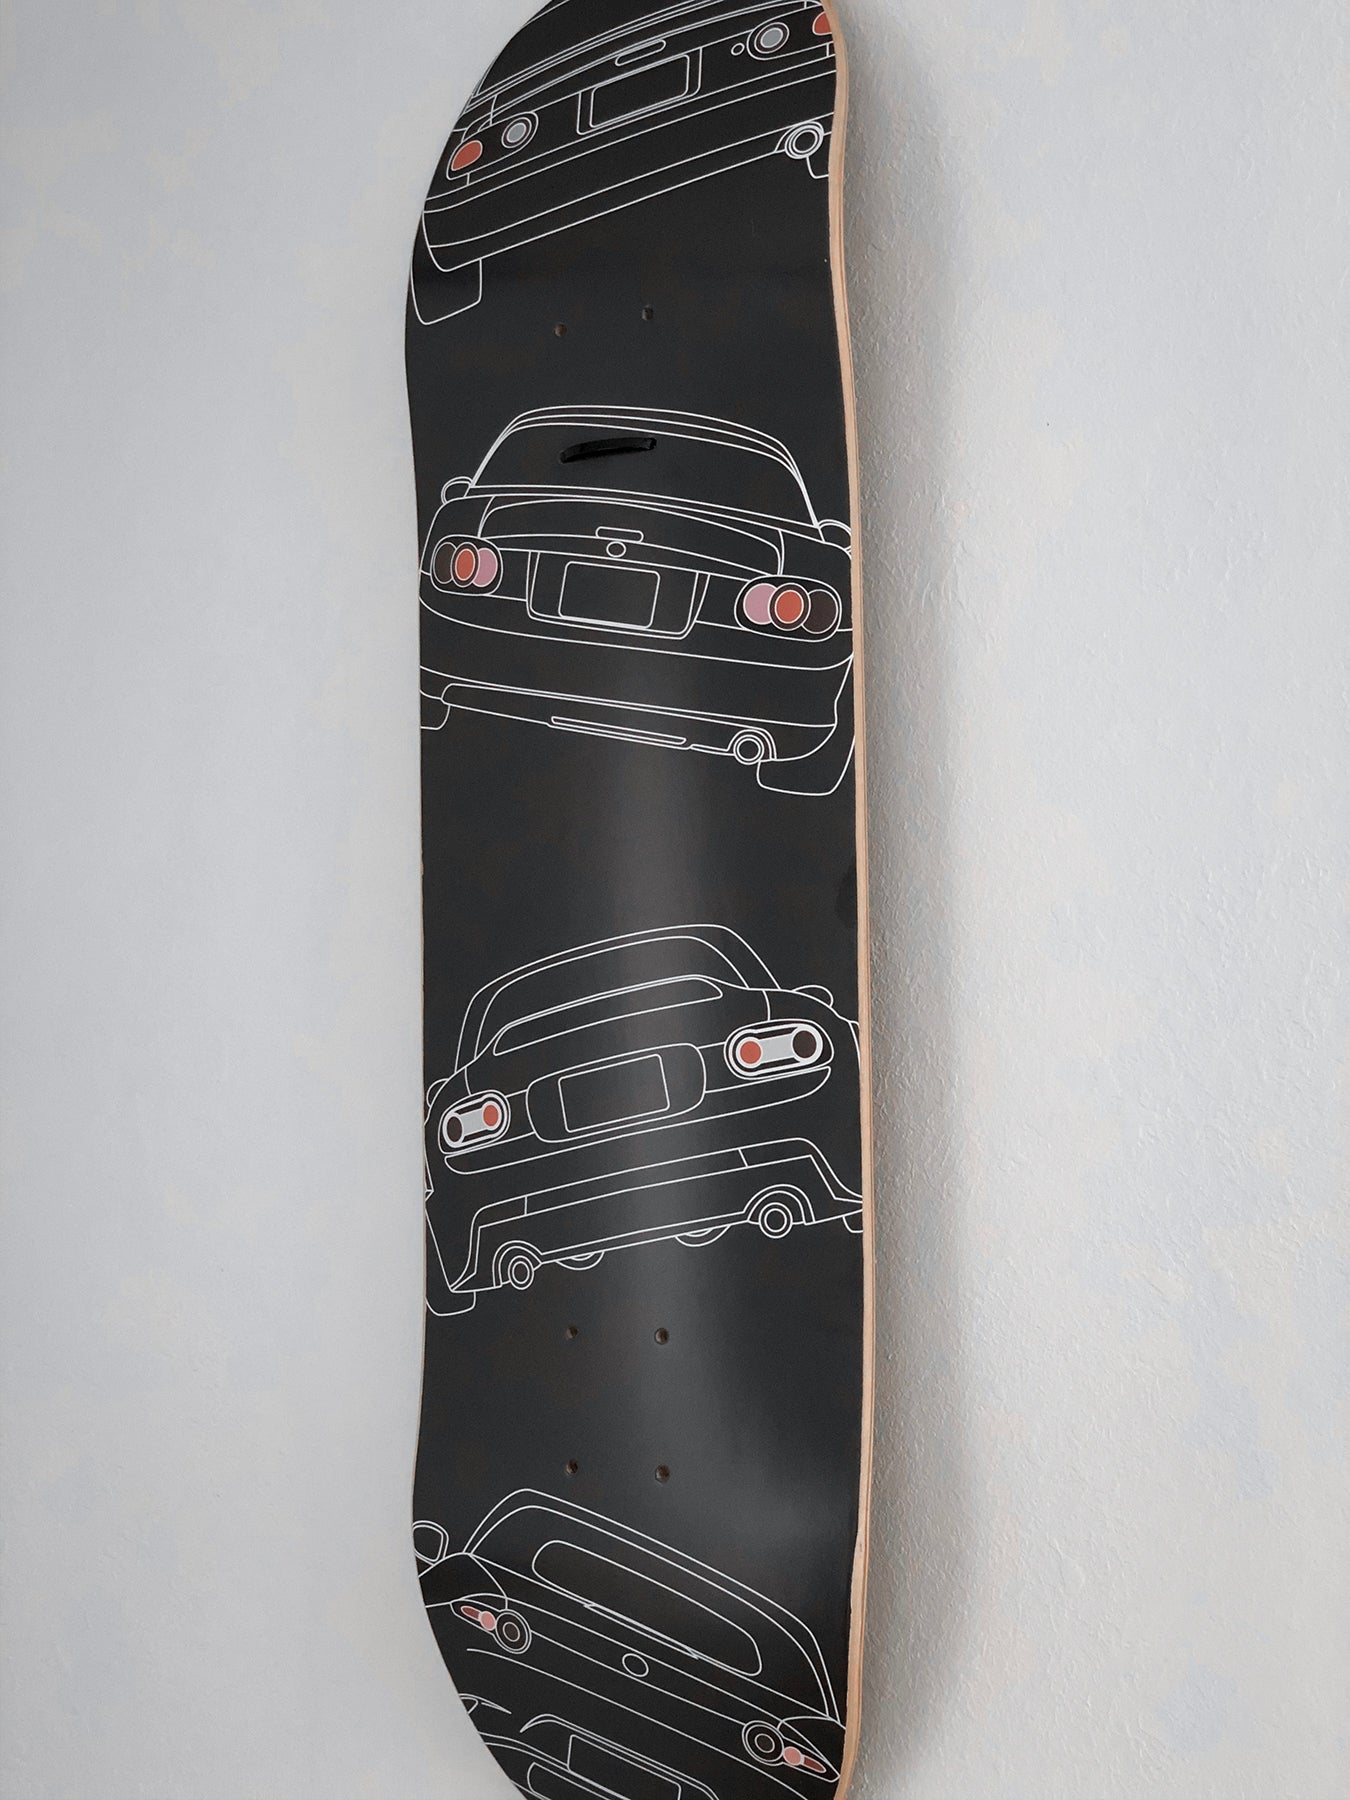 Miata NA-ND Skateboard Deck